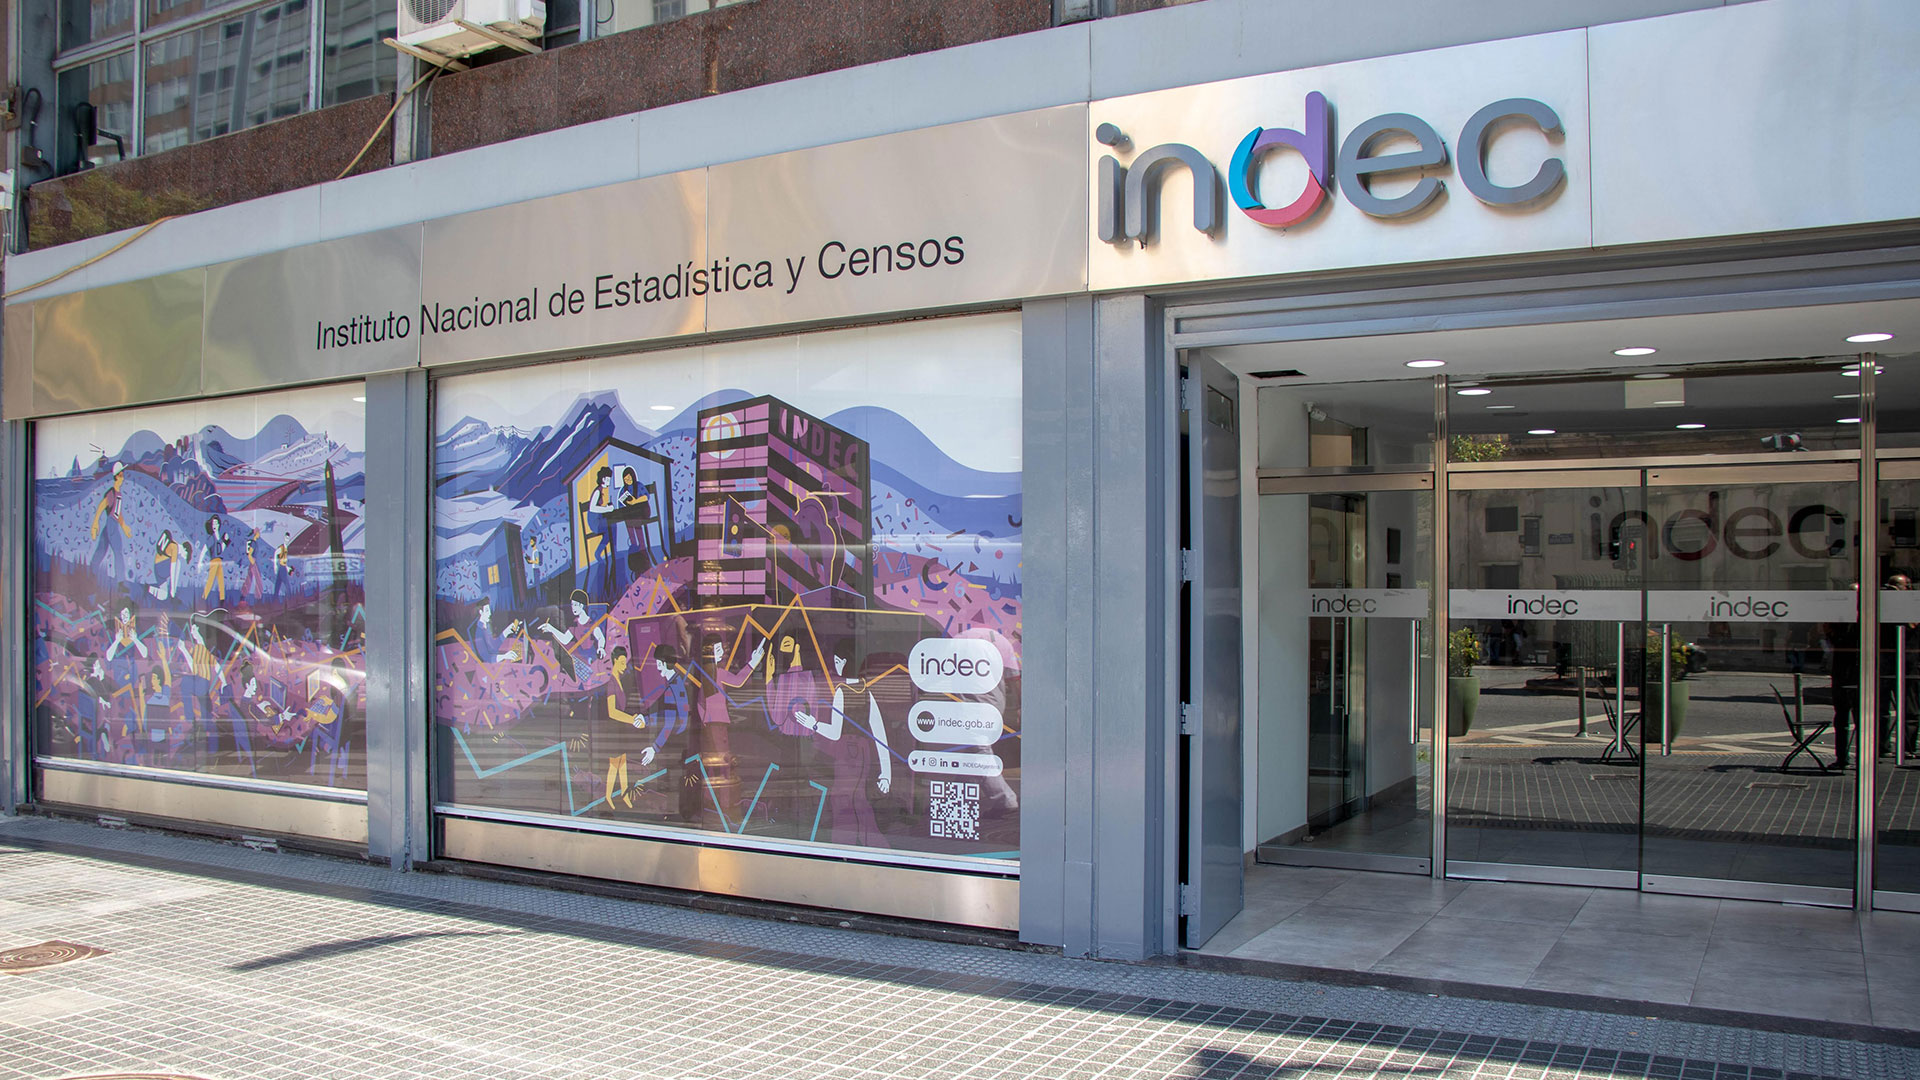 El Indec comenzará el empadronamiento para hacer el Censo Económico el 30 de noviembre